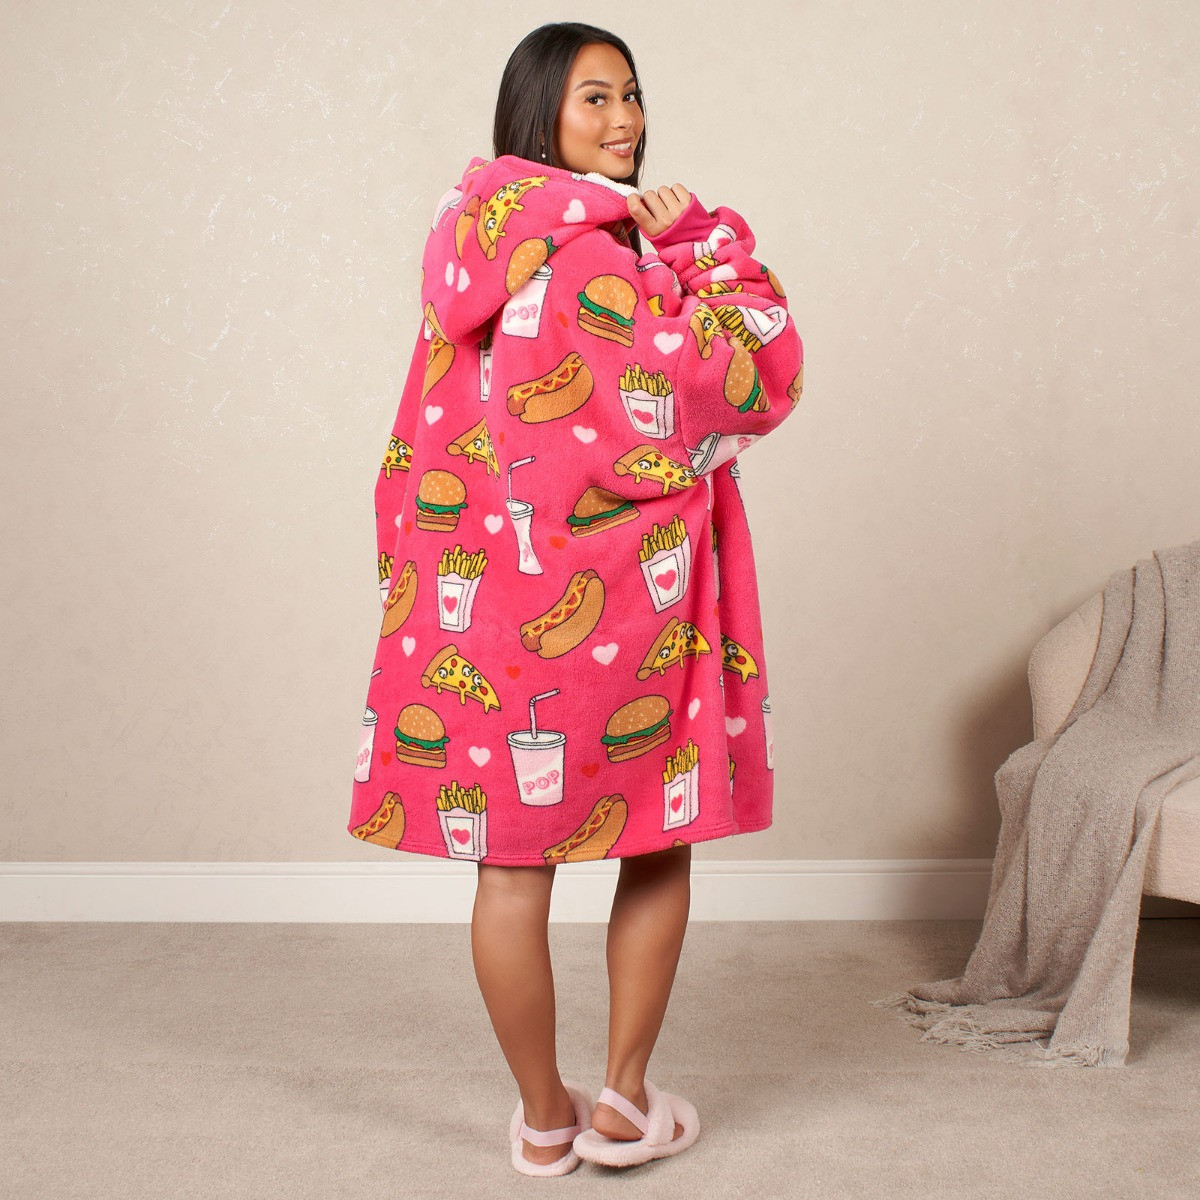 OHS Fast Food Print Hoodie Blanket, Adults - Pink>